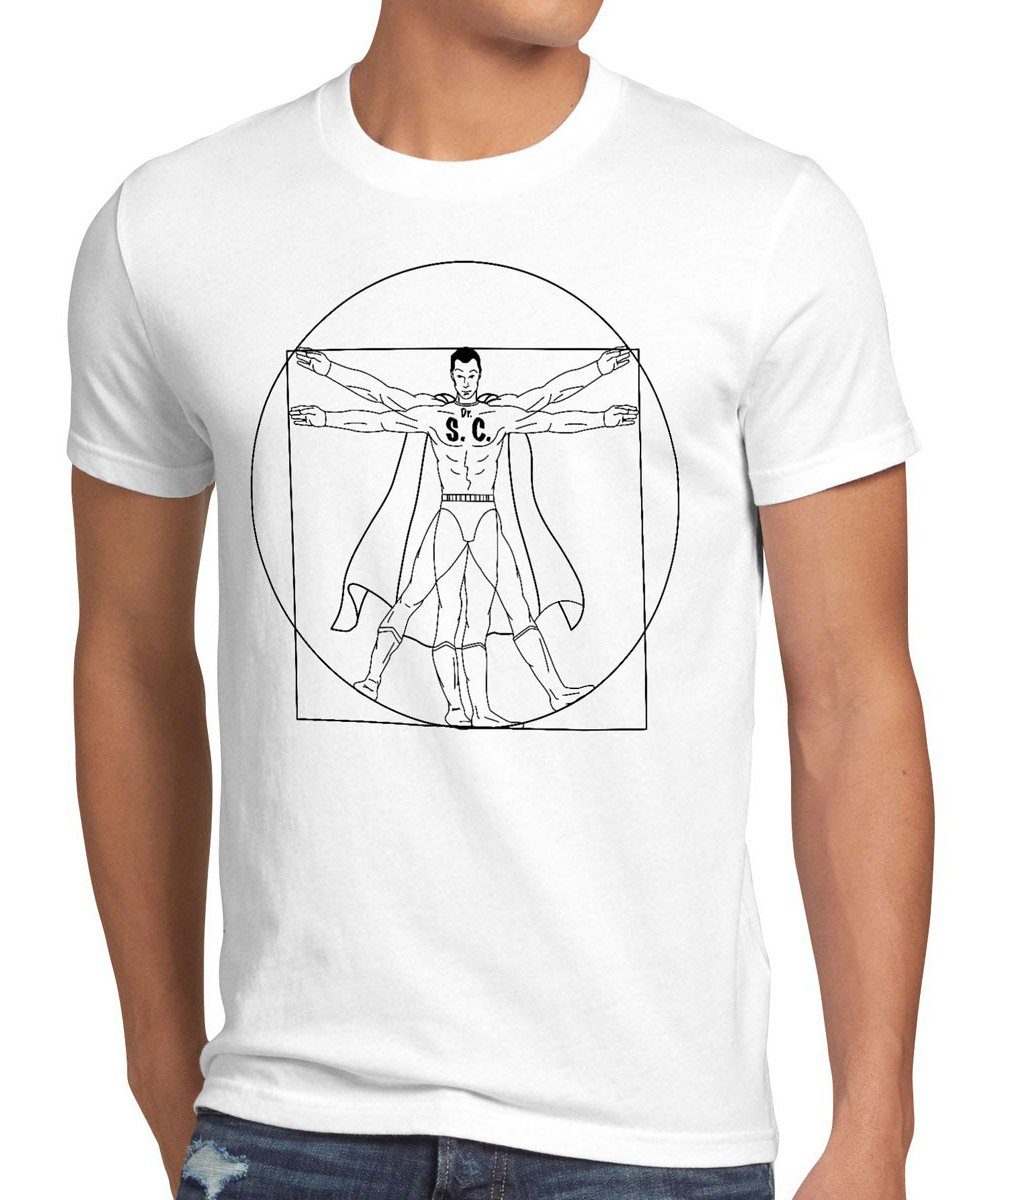 style3 Print-Shirt Herren T-Shirt Vinci theory Cooper Da big weiß Sheldon bang Vitruvianischer Mensch